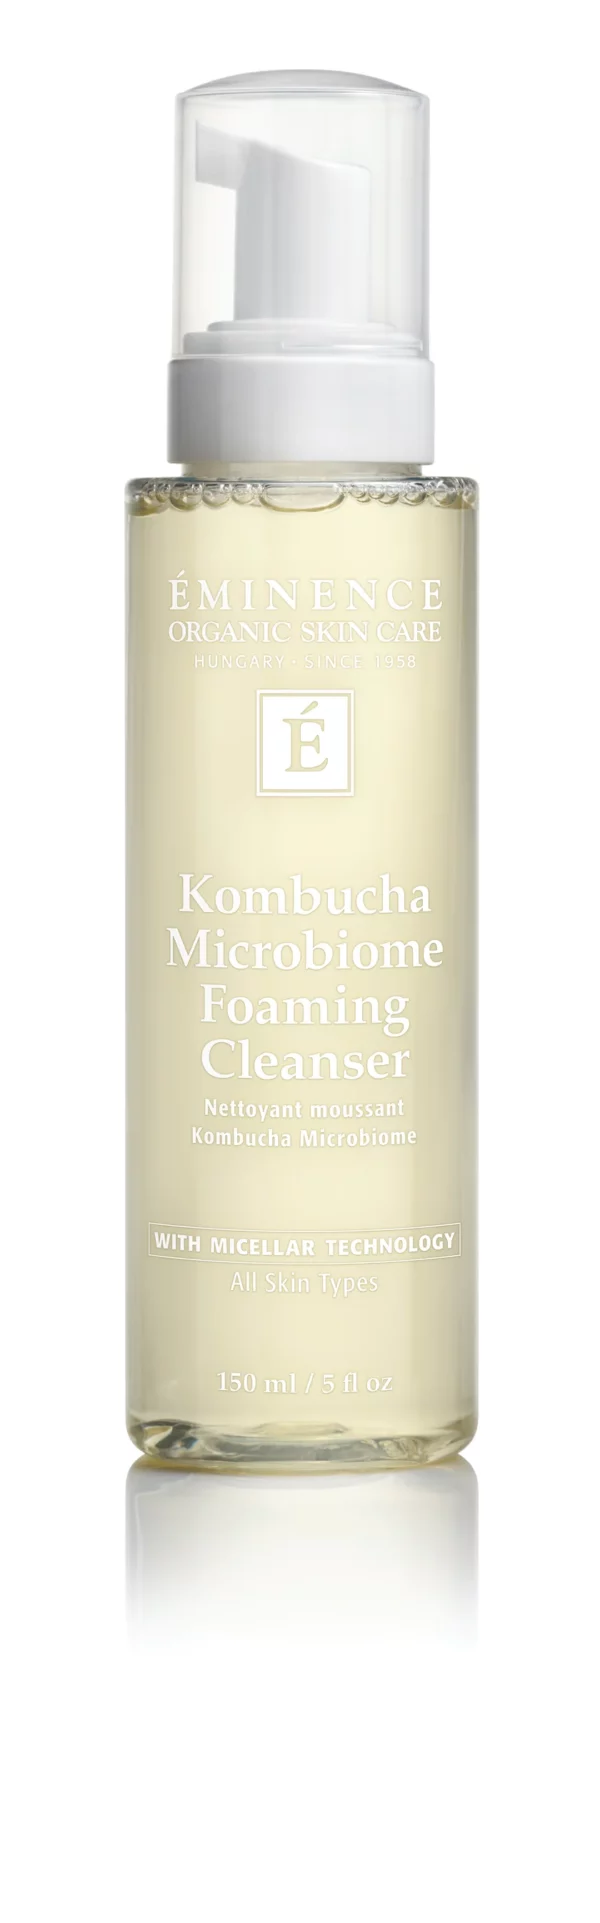 Eminence Organics Kombucha Microbiome Foaming Cleanser 5oz CMYK 840x scaled